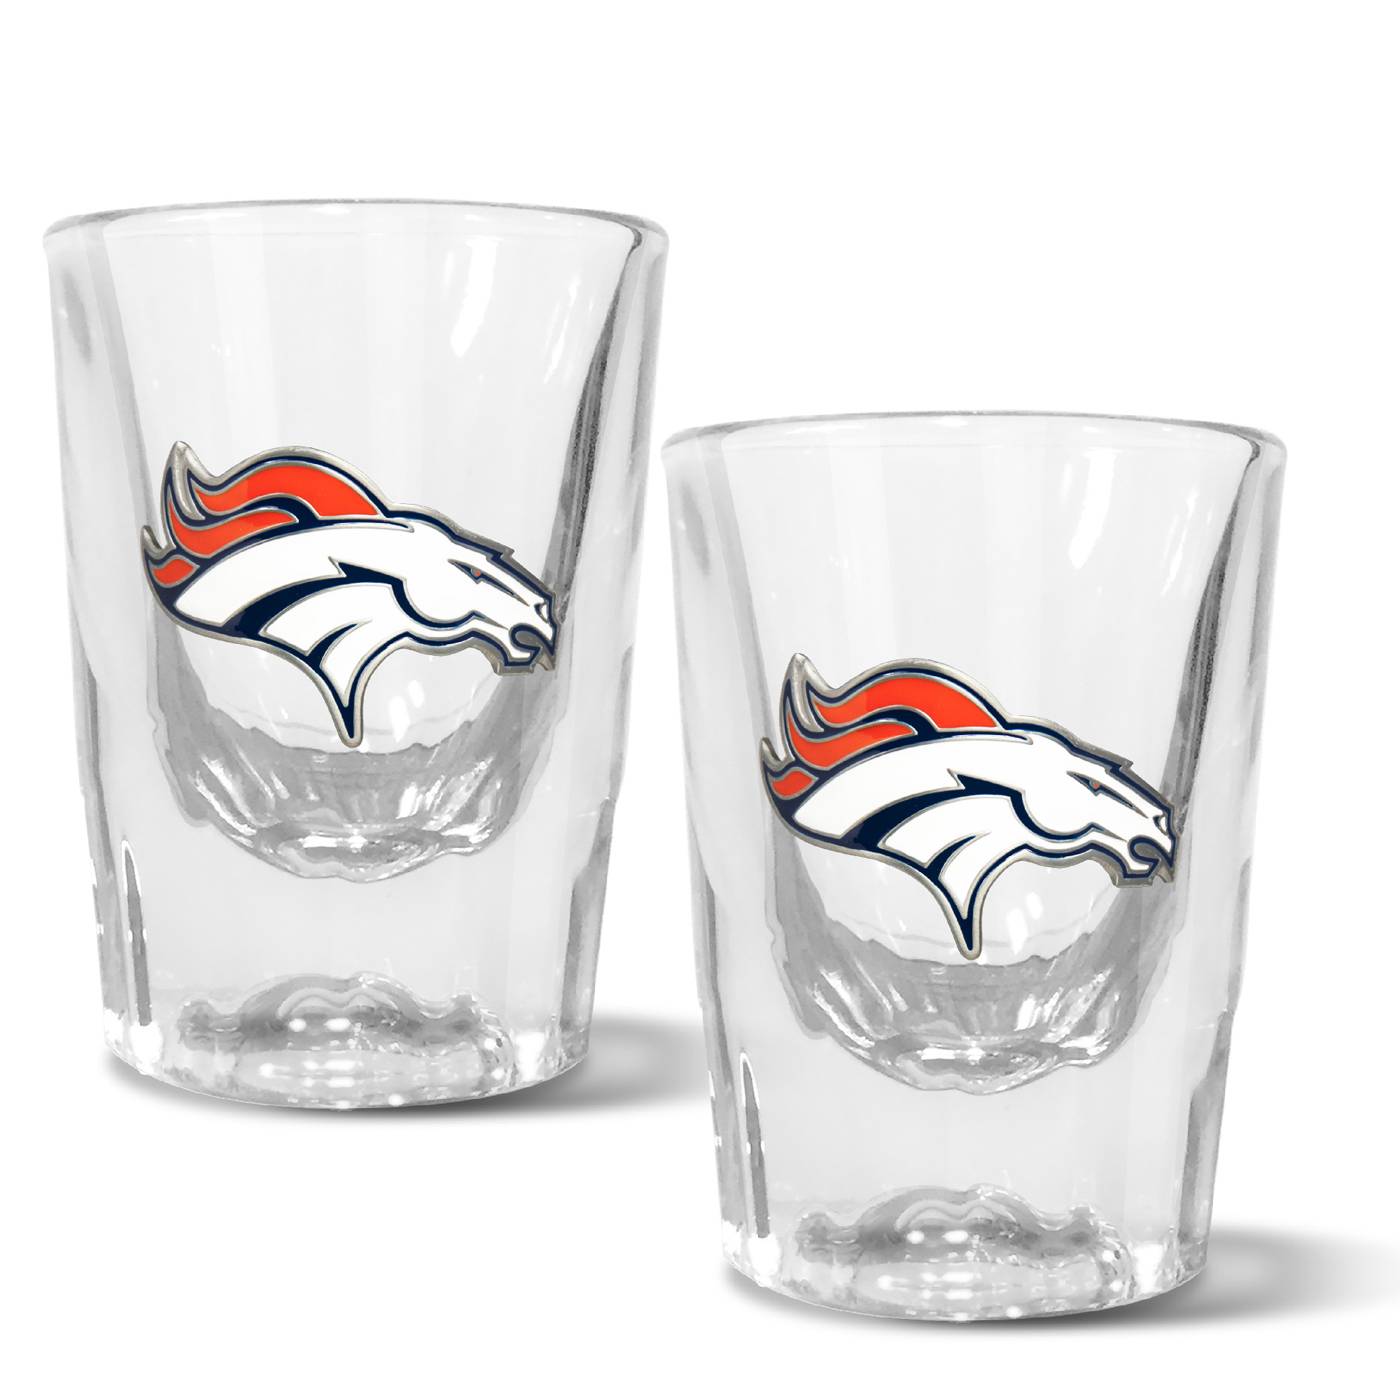 Denver Broncos Shot Glass Set Collectibles Memorabilia lifepharmafze.com